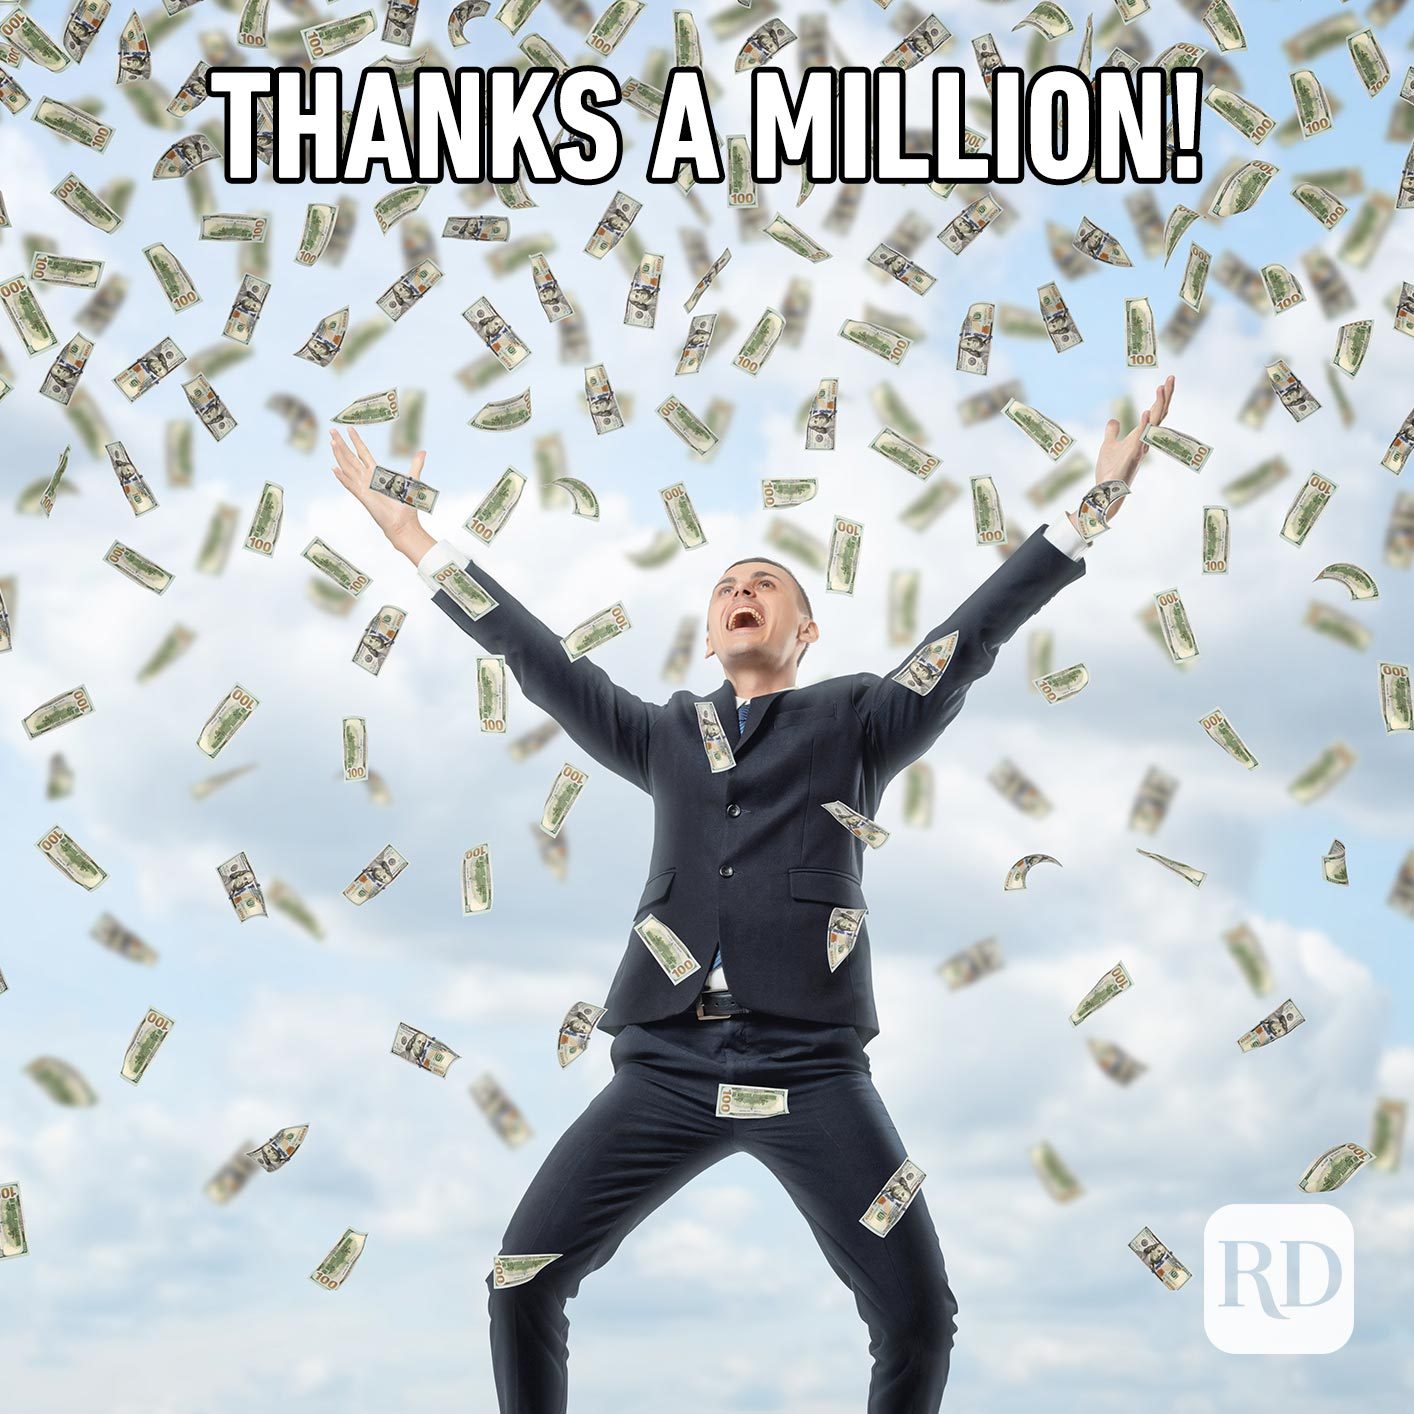 Man throwing a ton of money. Meme text: Thanks a million!